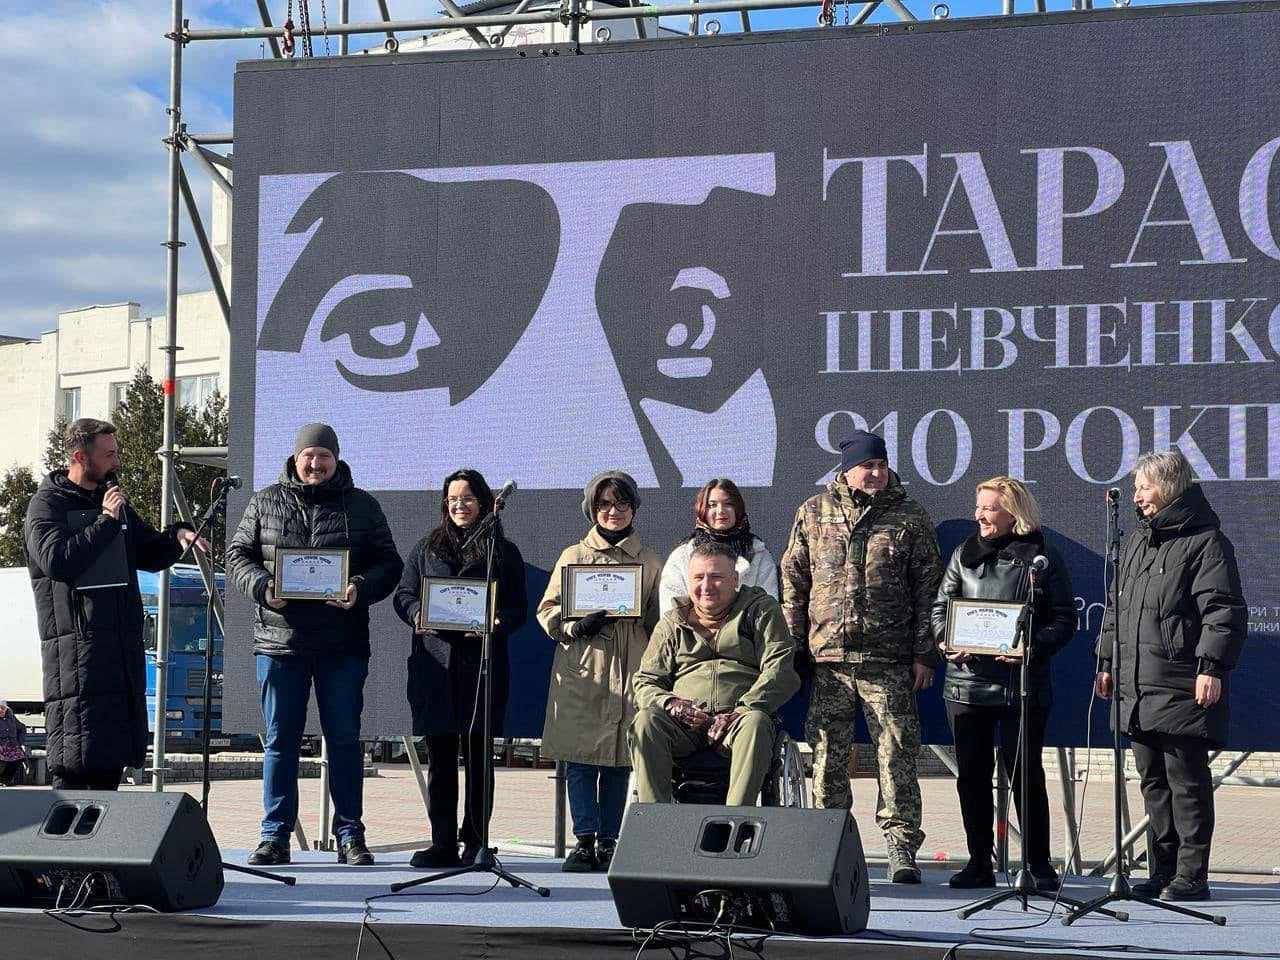 Київщина встановила рекорд з найтривалішого публічного декламування Шевченка за участі військових